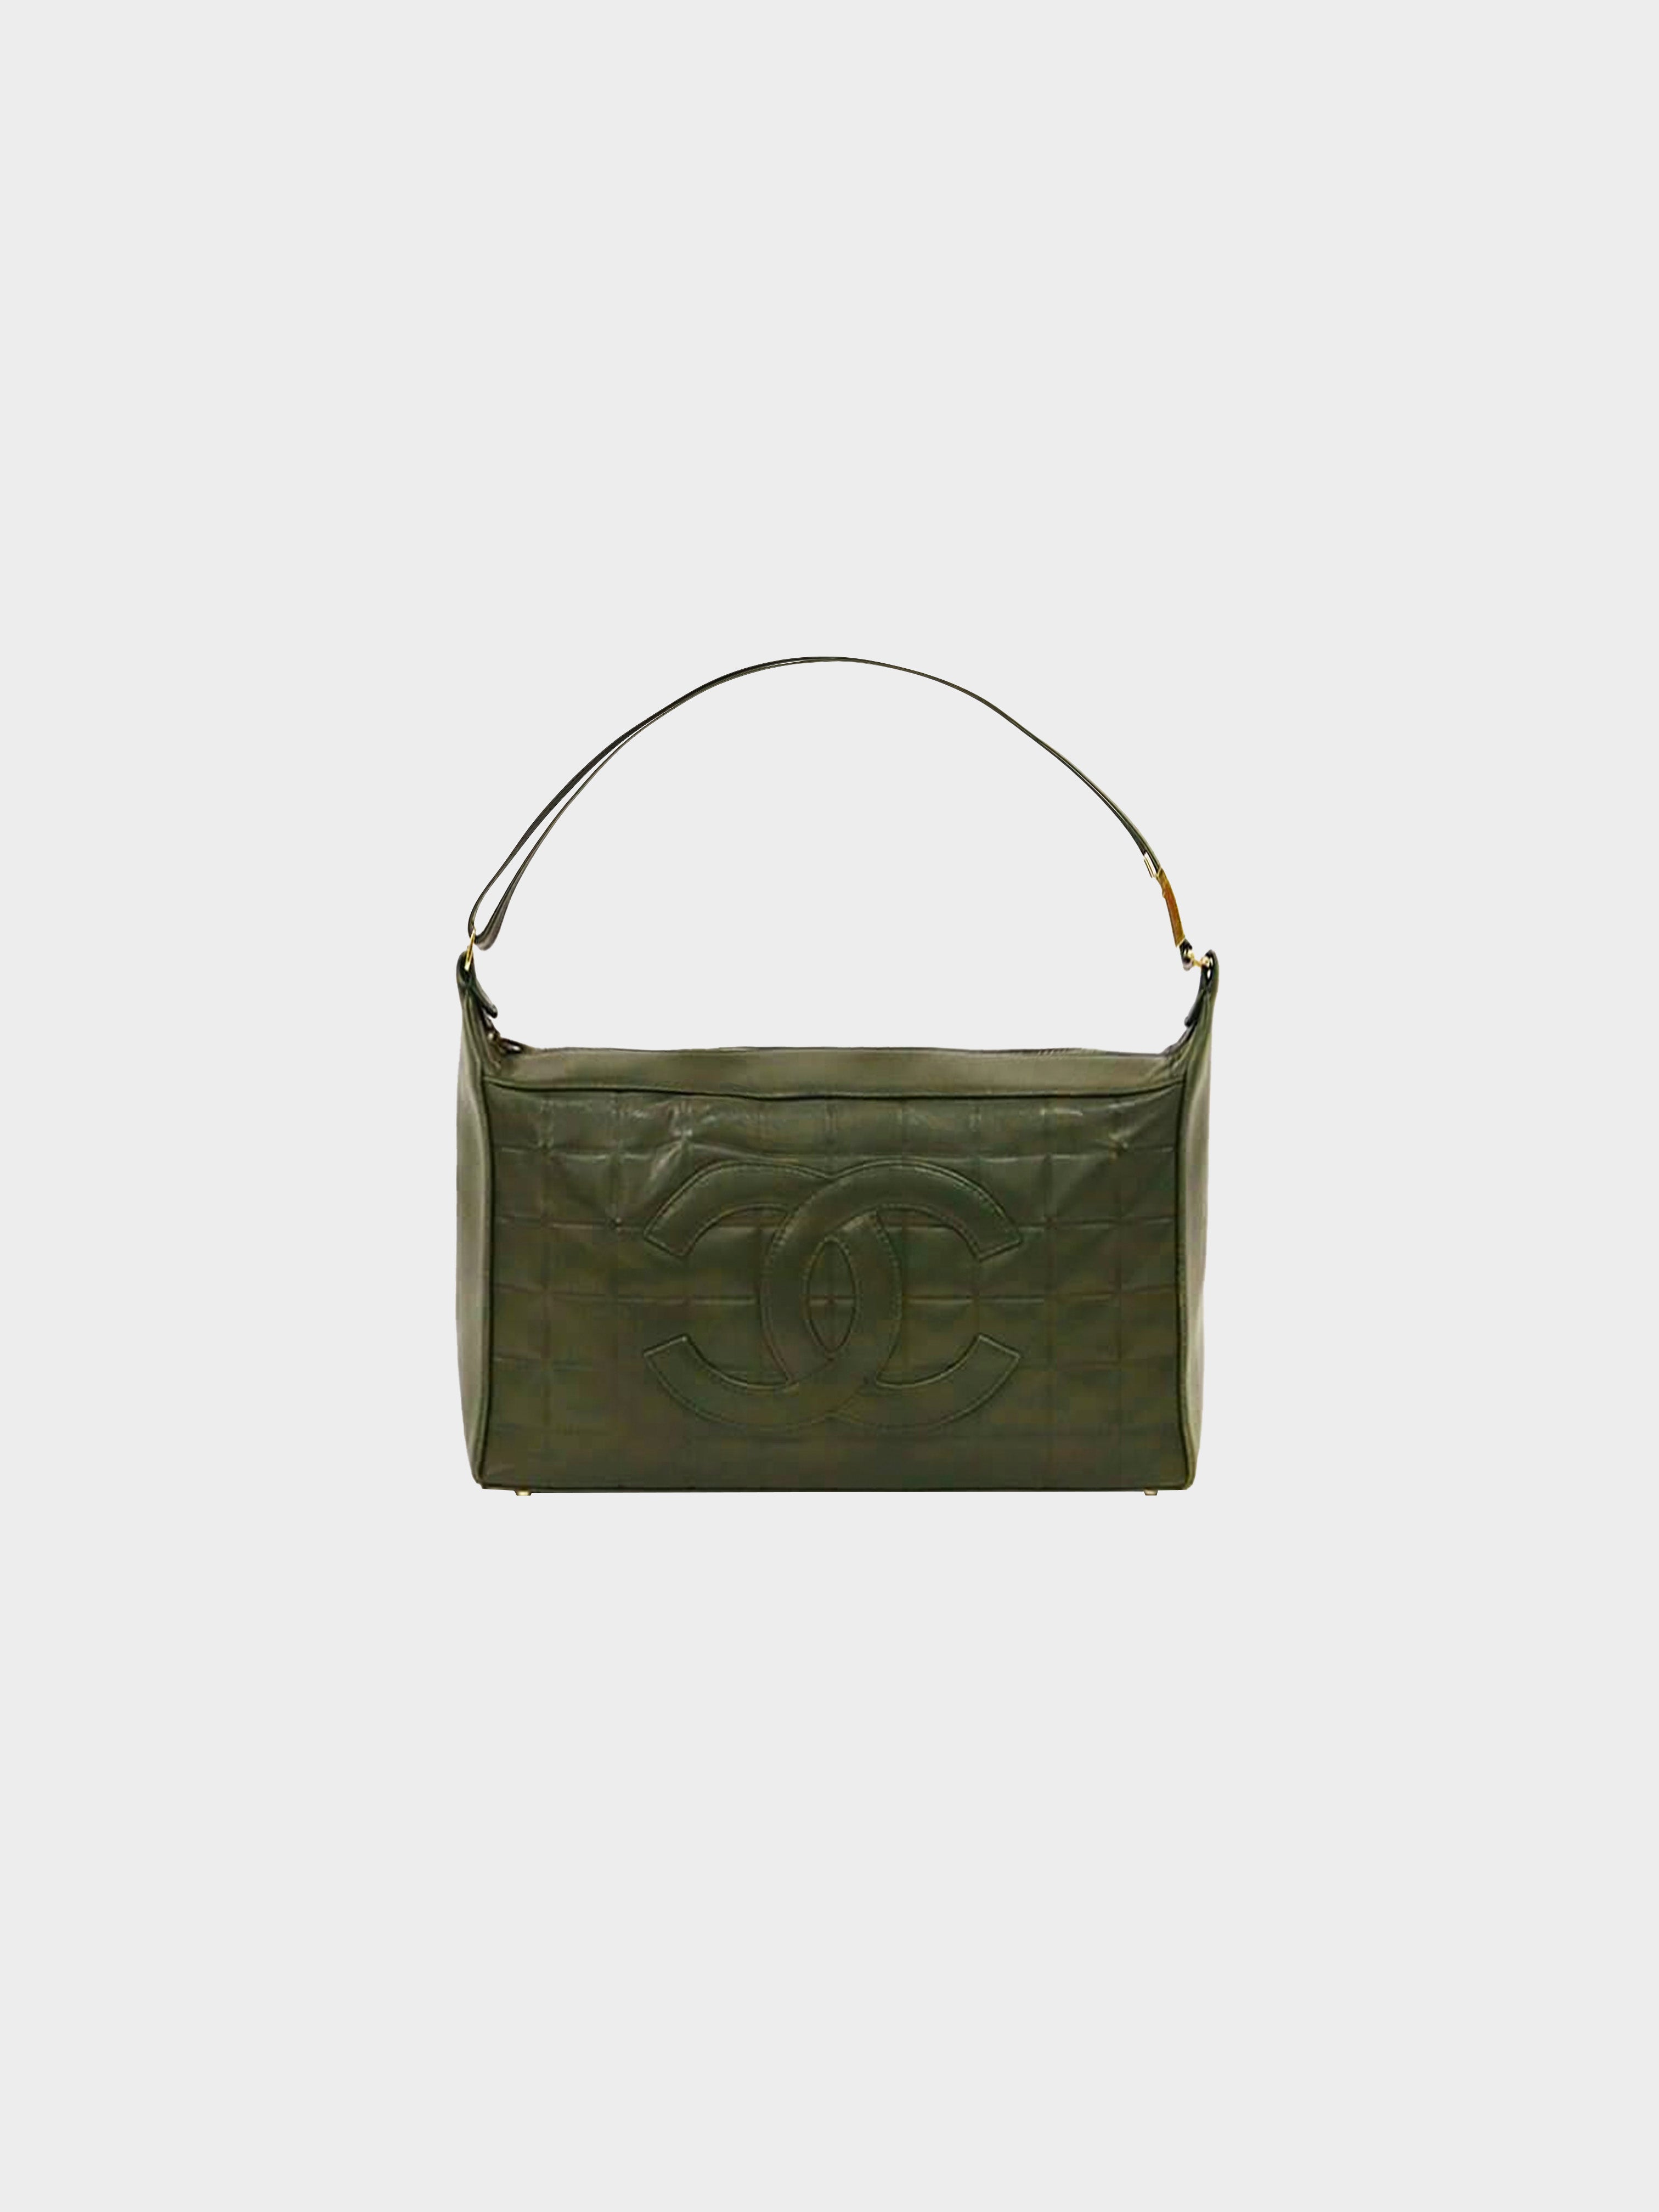 Chanel 2000 Green Chocolate Bar Bag · INTO